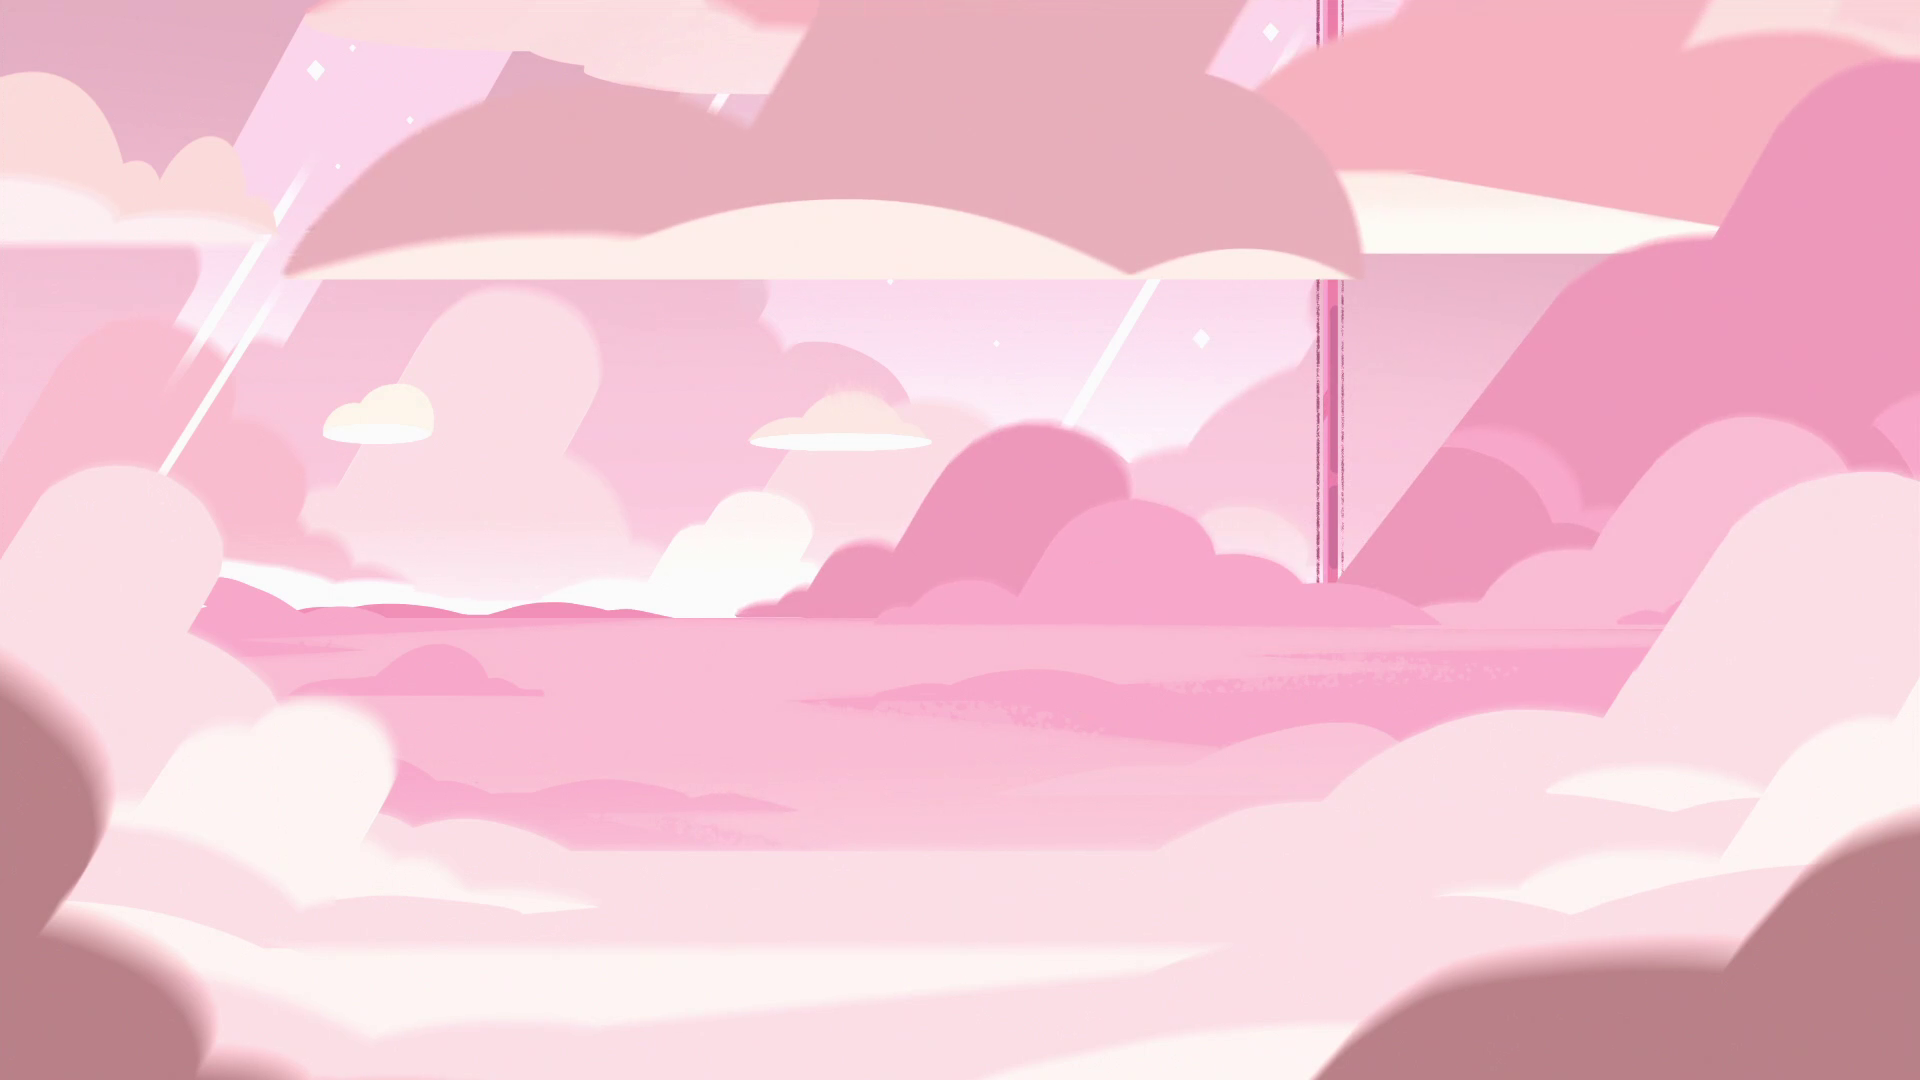 Steven Universe Rose Background